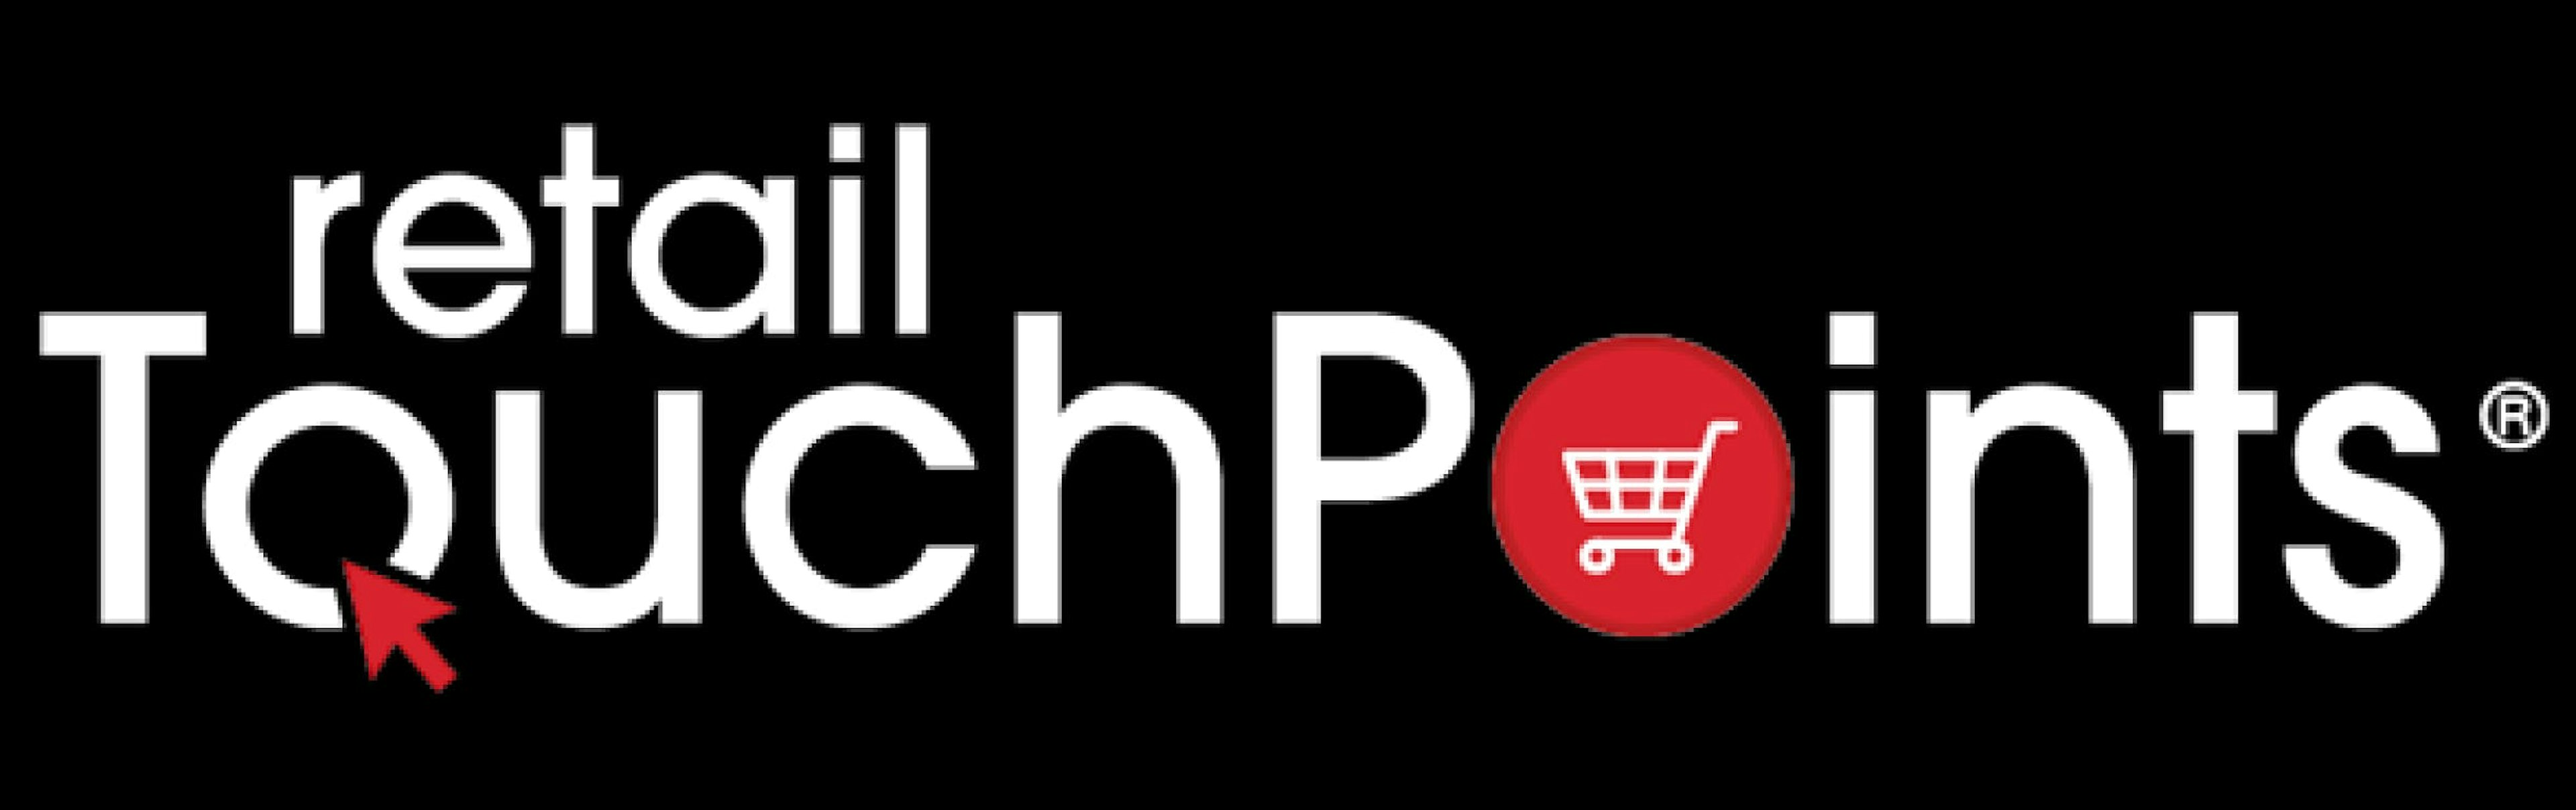 retailtouchpoints logo